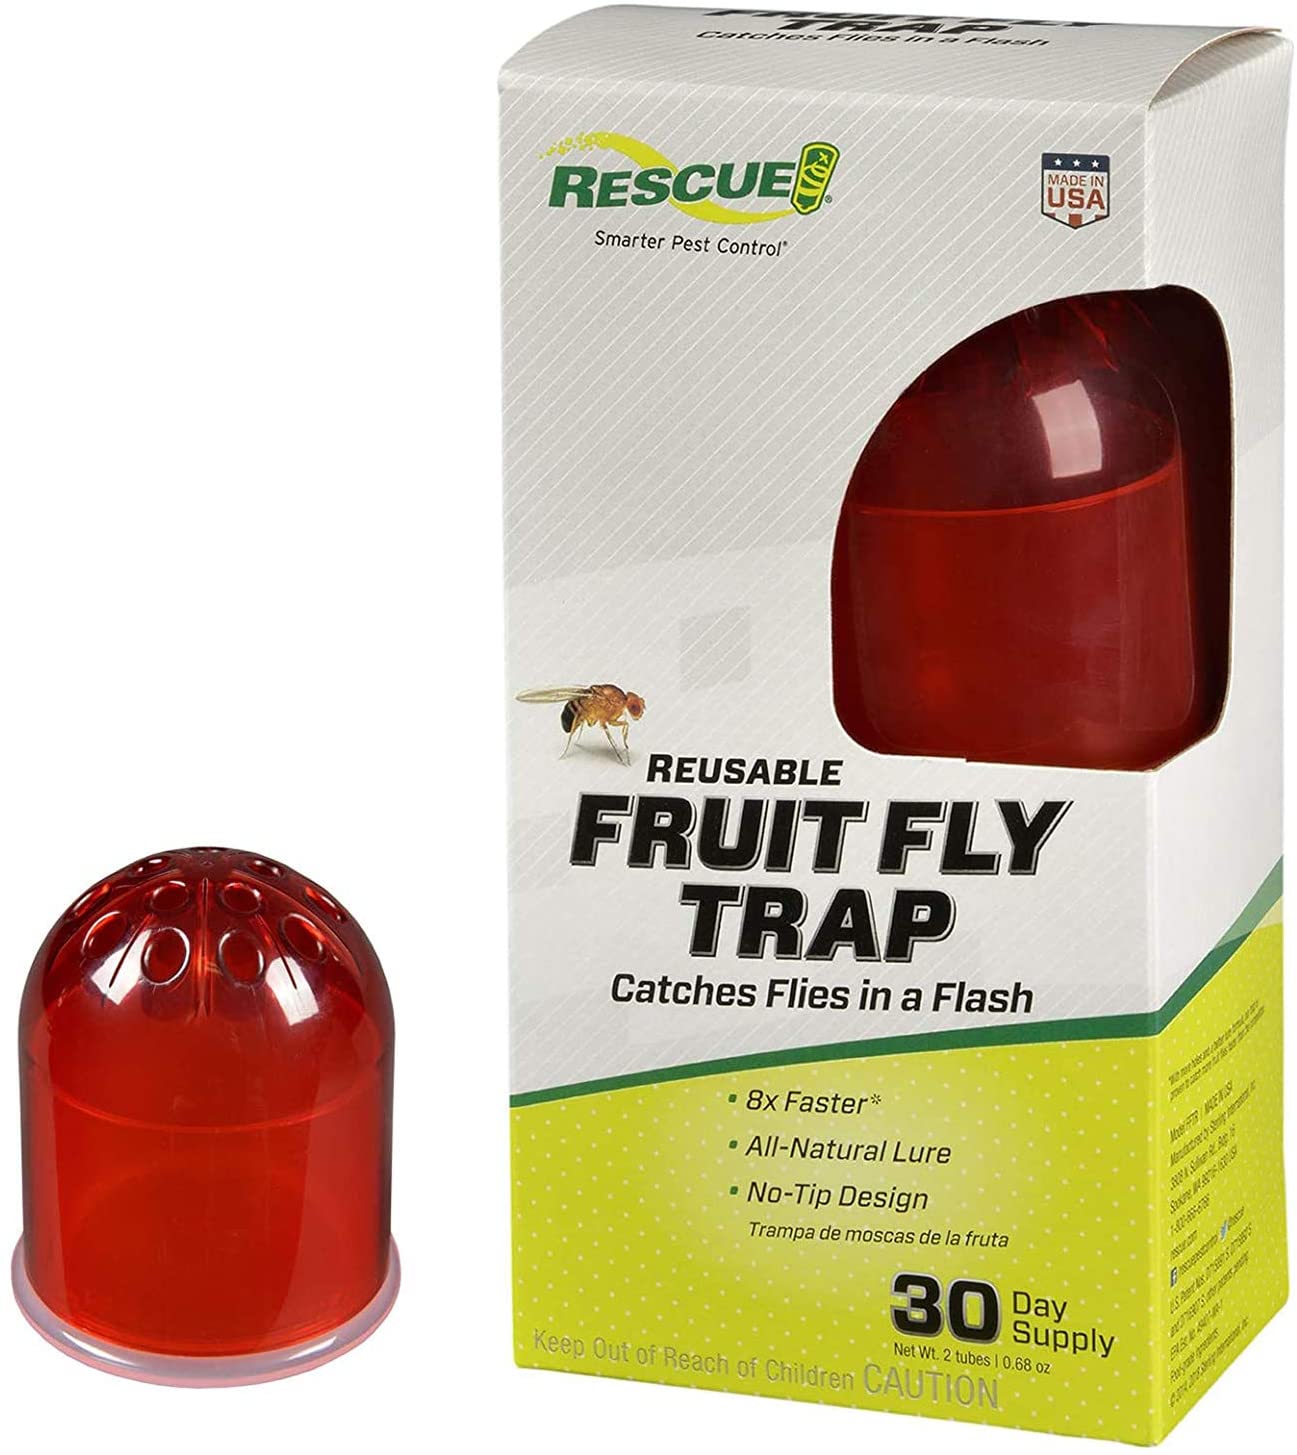 RSECUE REUSABLE FRUIT FLY TRAP